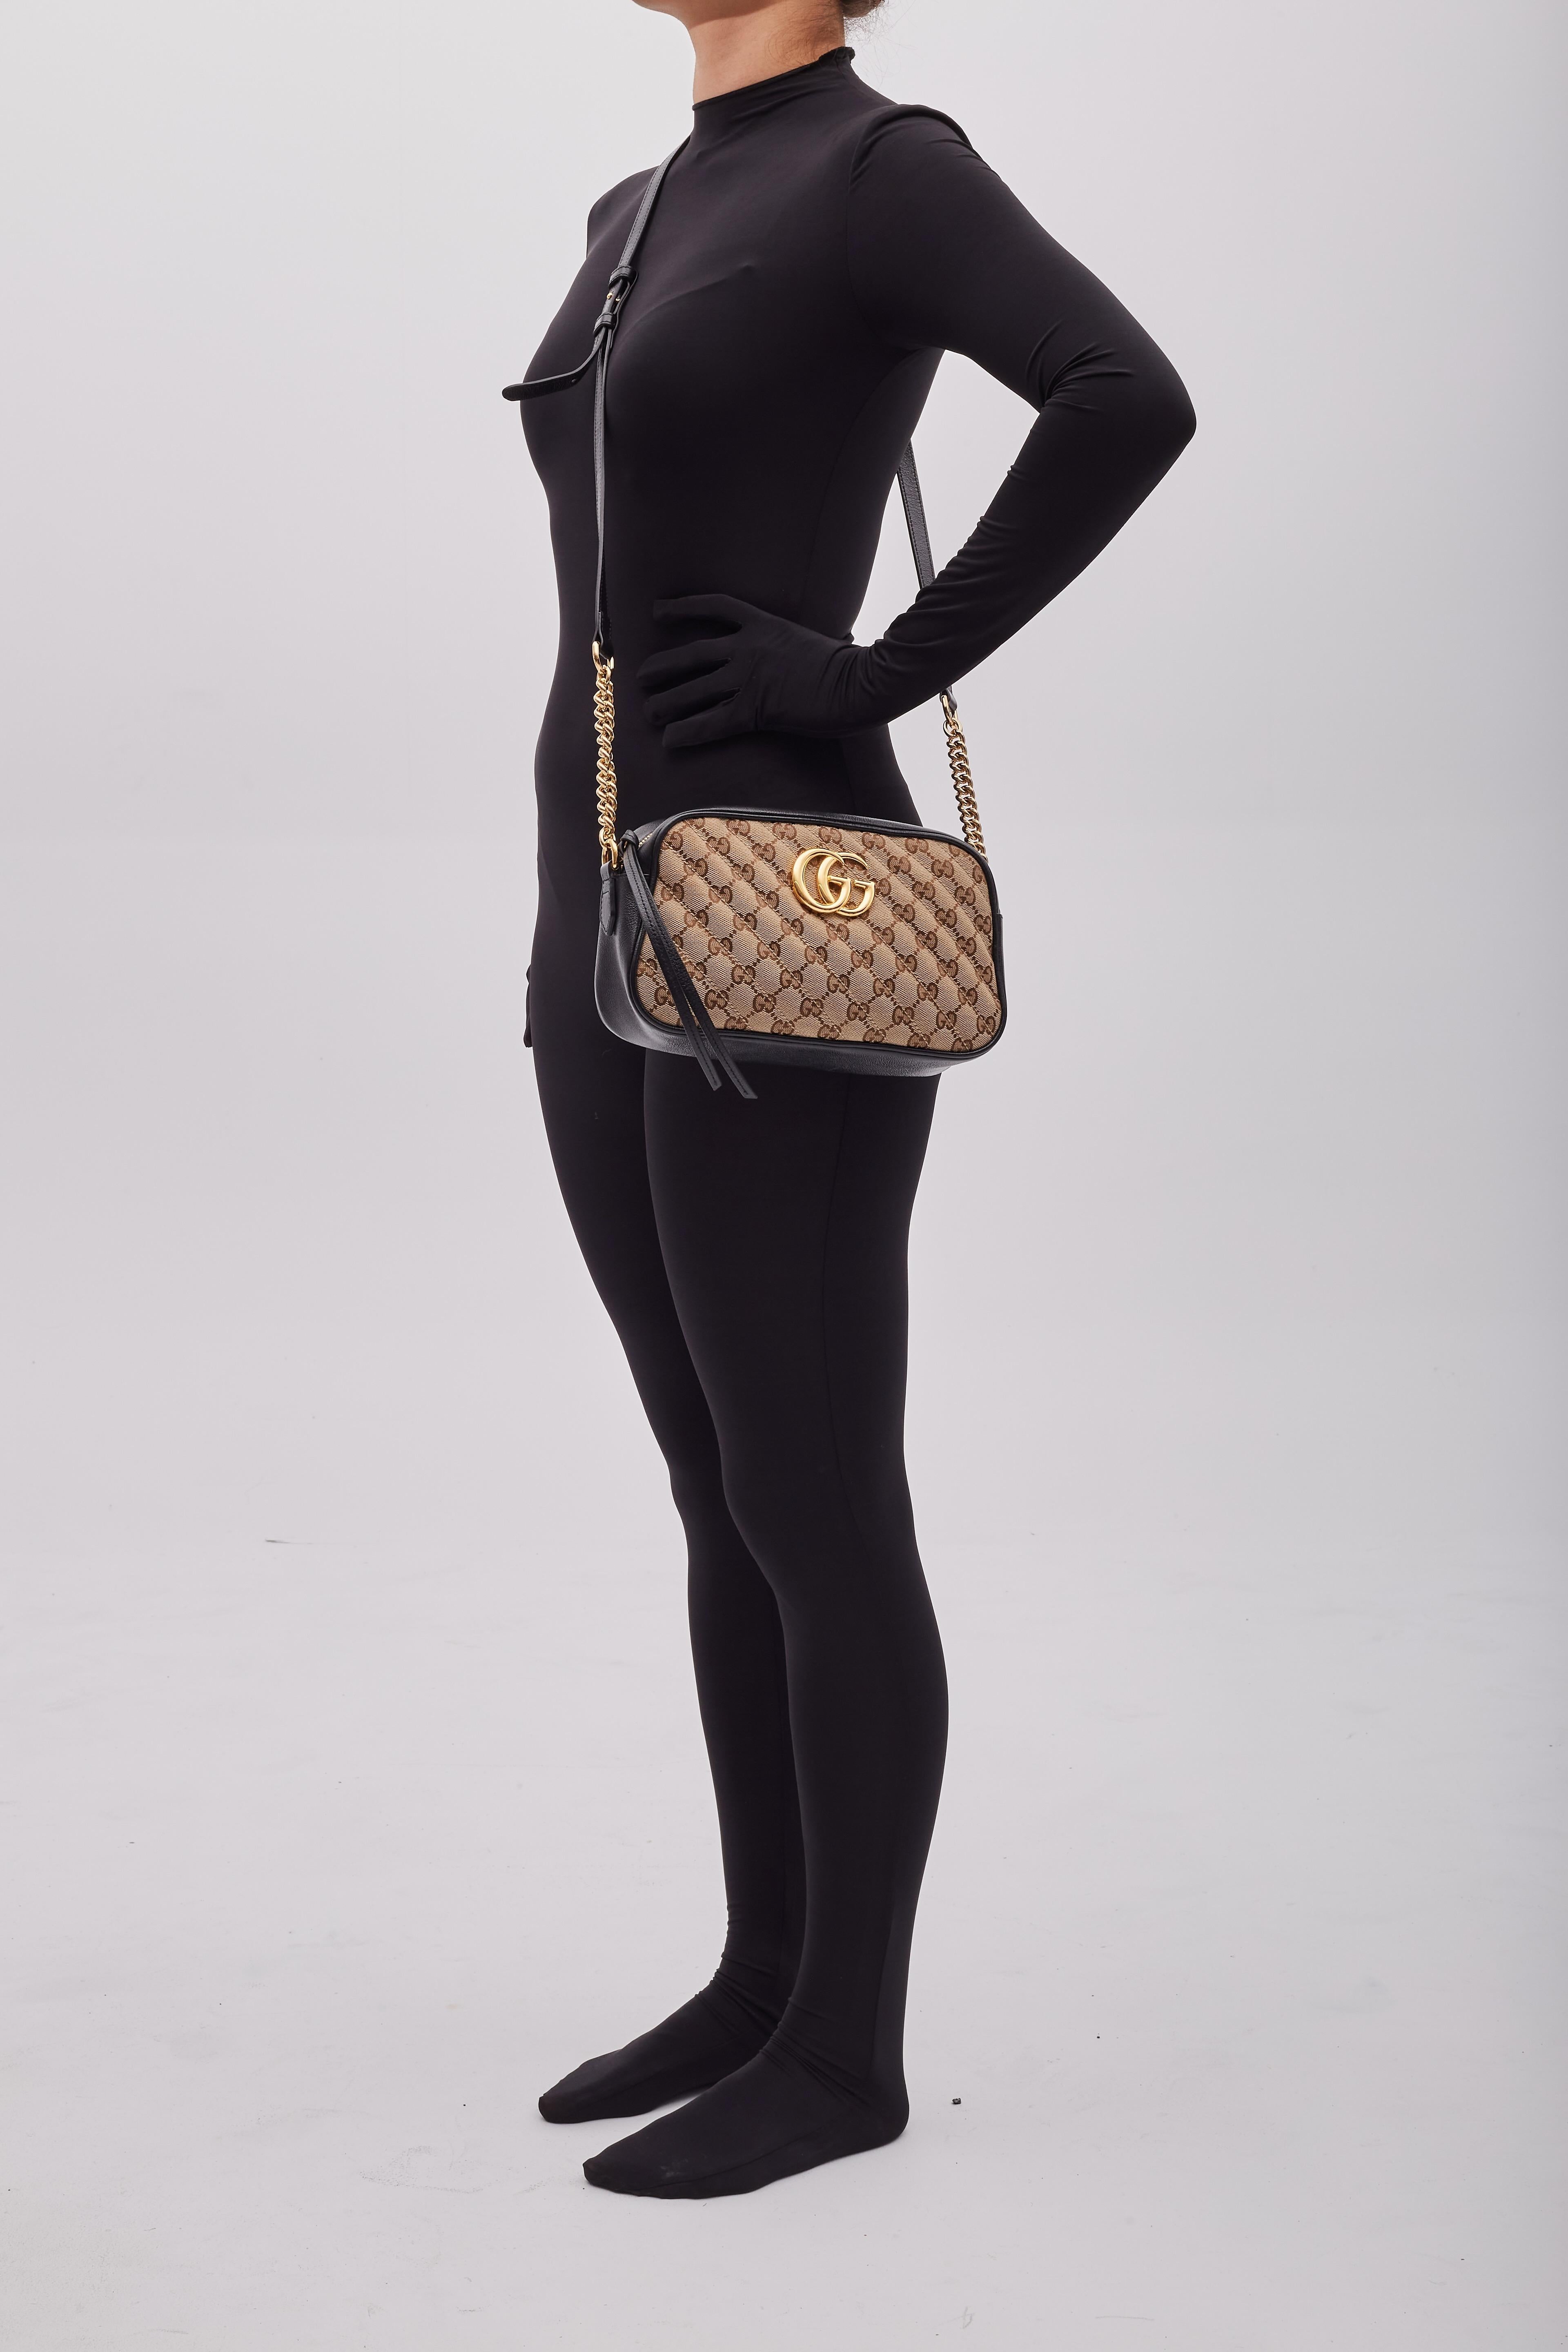 Diese Umhängetasche besteht aus dem originalen GG Canvas von Gucci mit einer gesteppten, diagonalen Matelassé-Technik und ist mit schwarzem Leder verziert. Die Tasche hat goldfarbene Beschläge, einen Schulterriemen aus Kettengliedern, ein